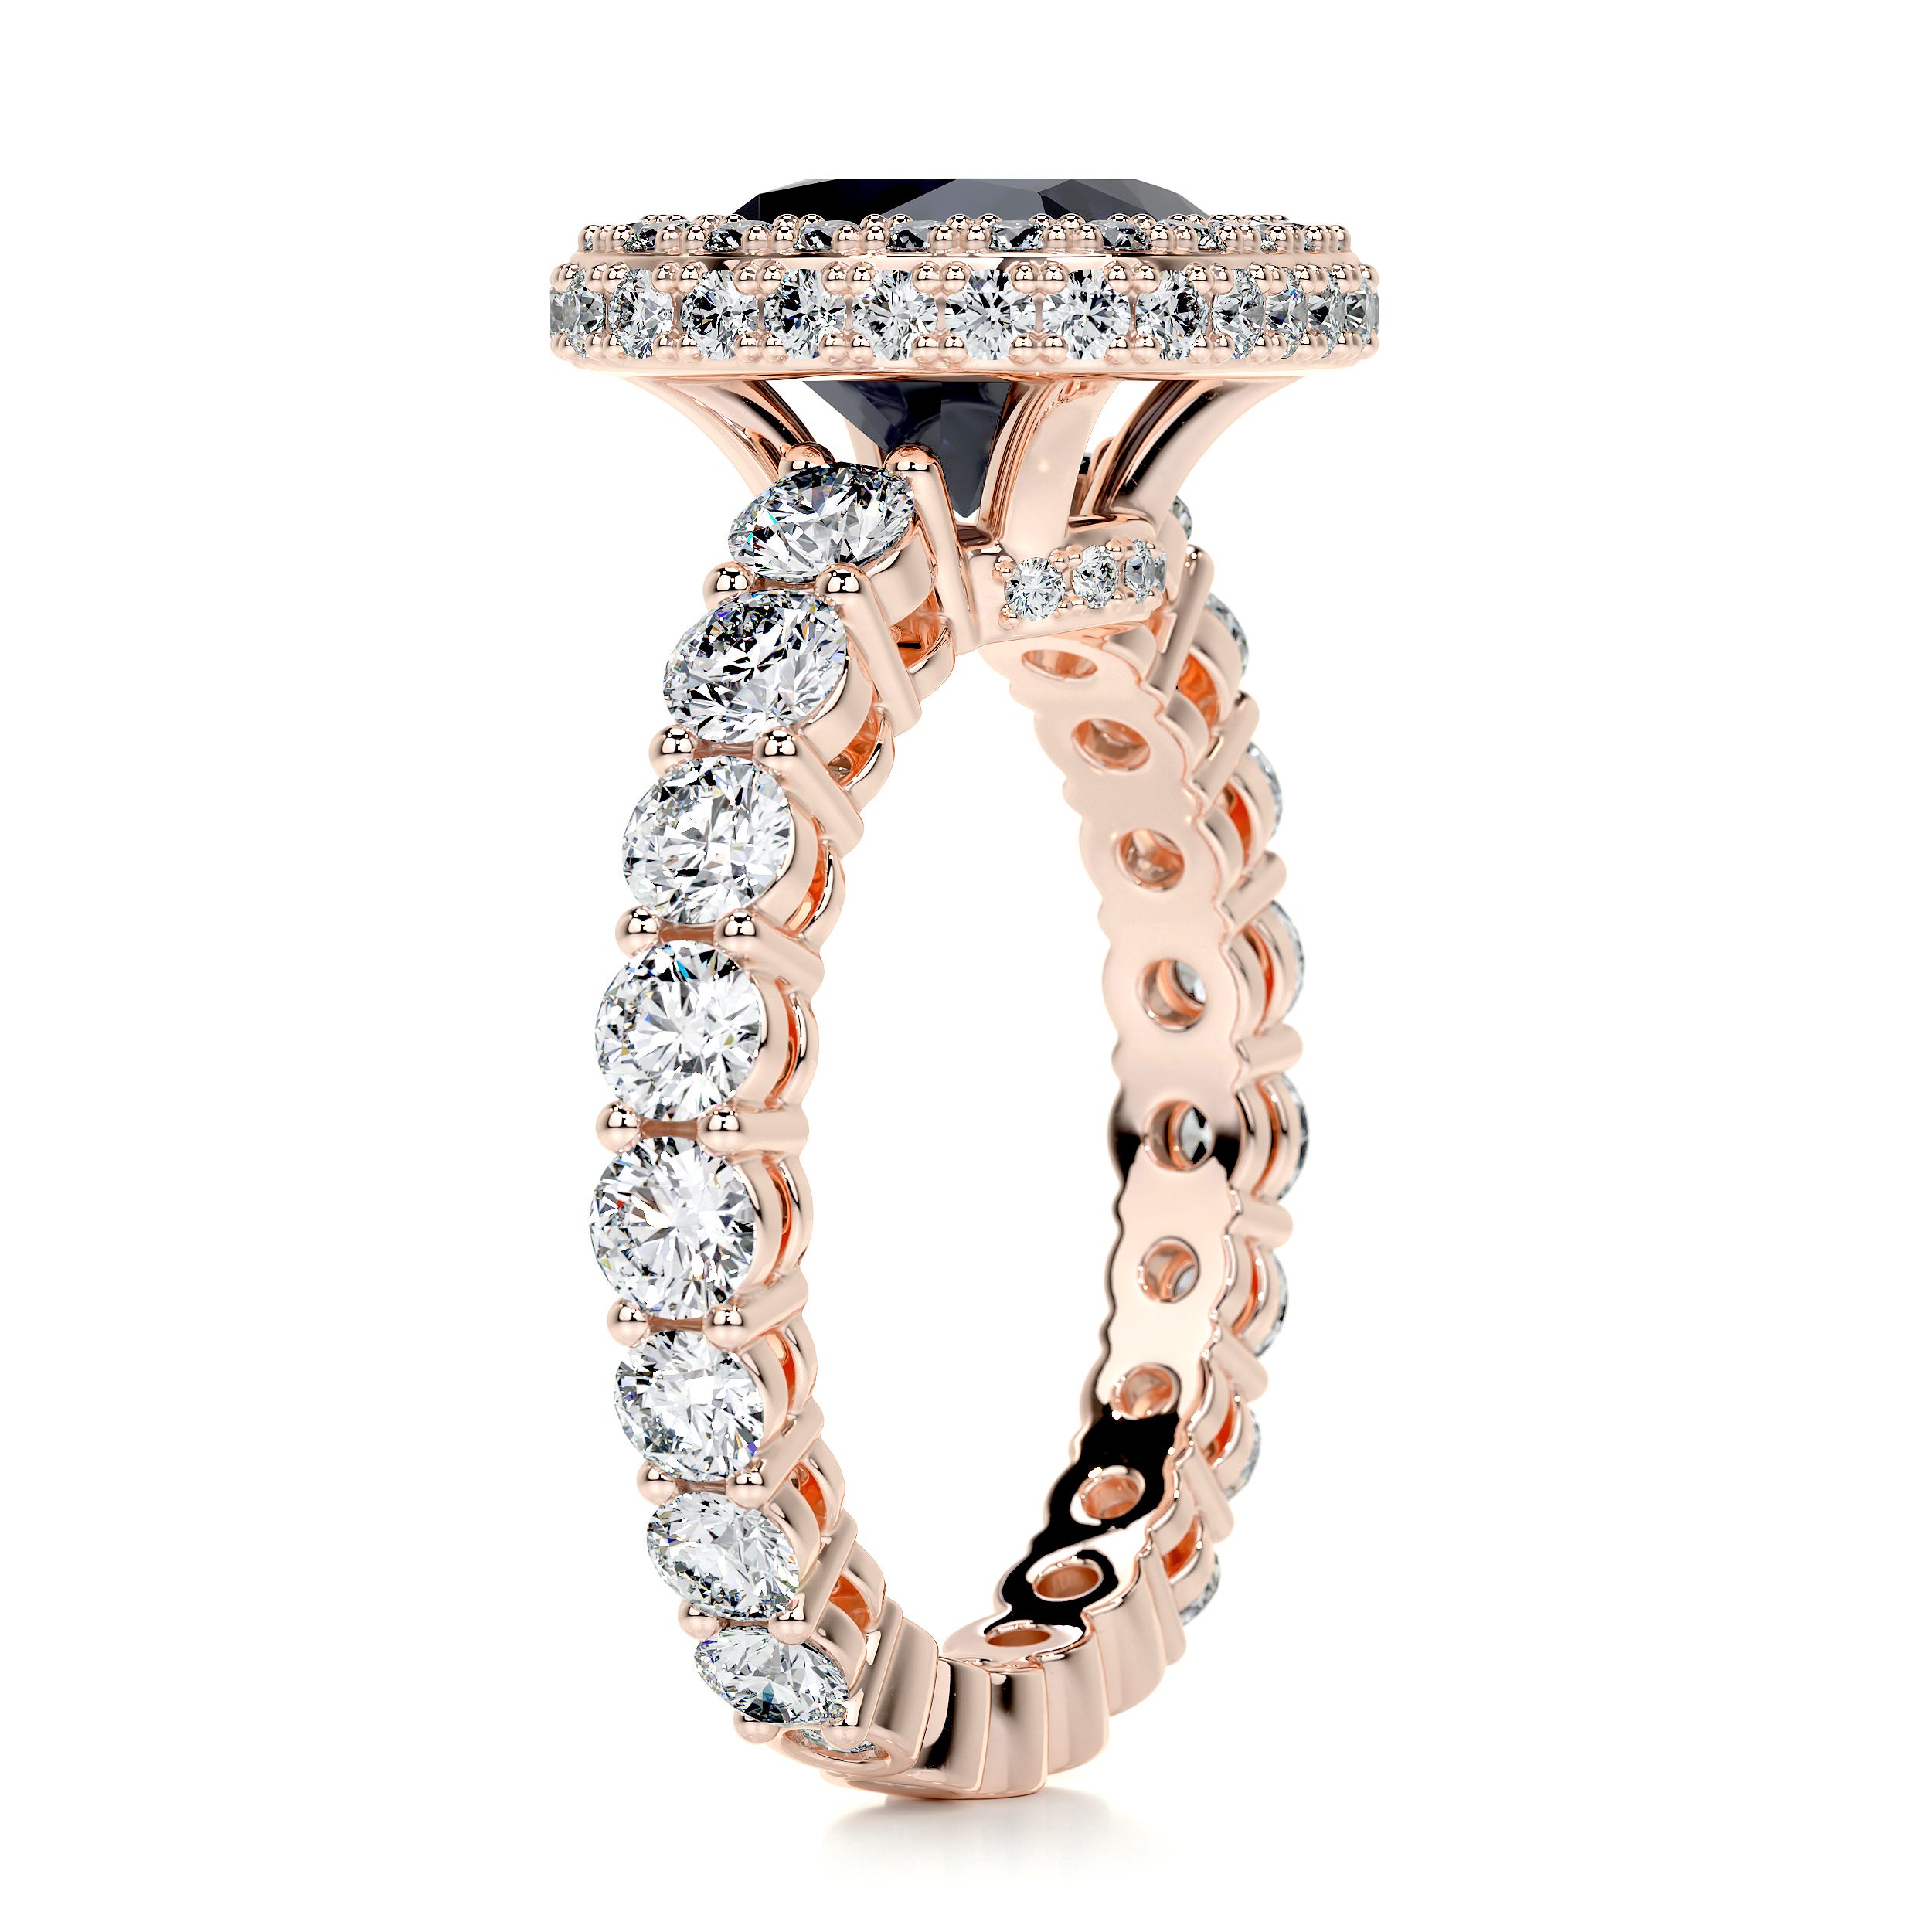 North Gemstone & Diamonds Ring   (4 Carat) - 14K Rose Gold